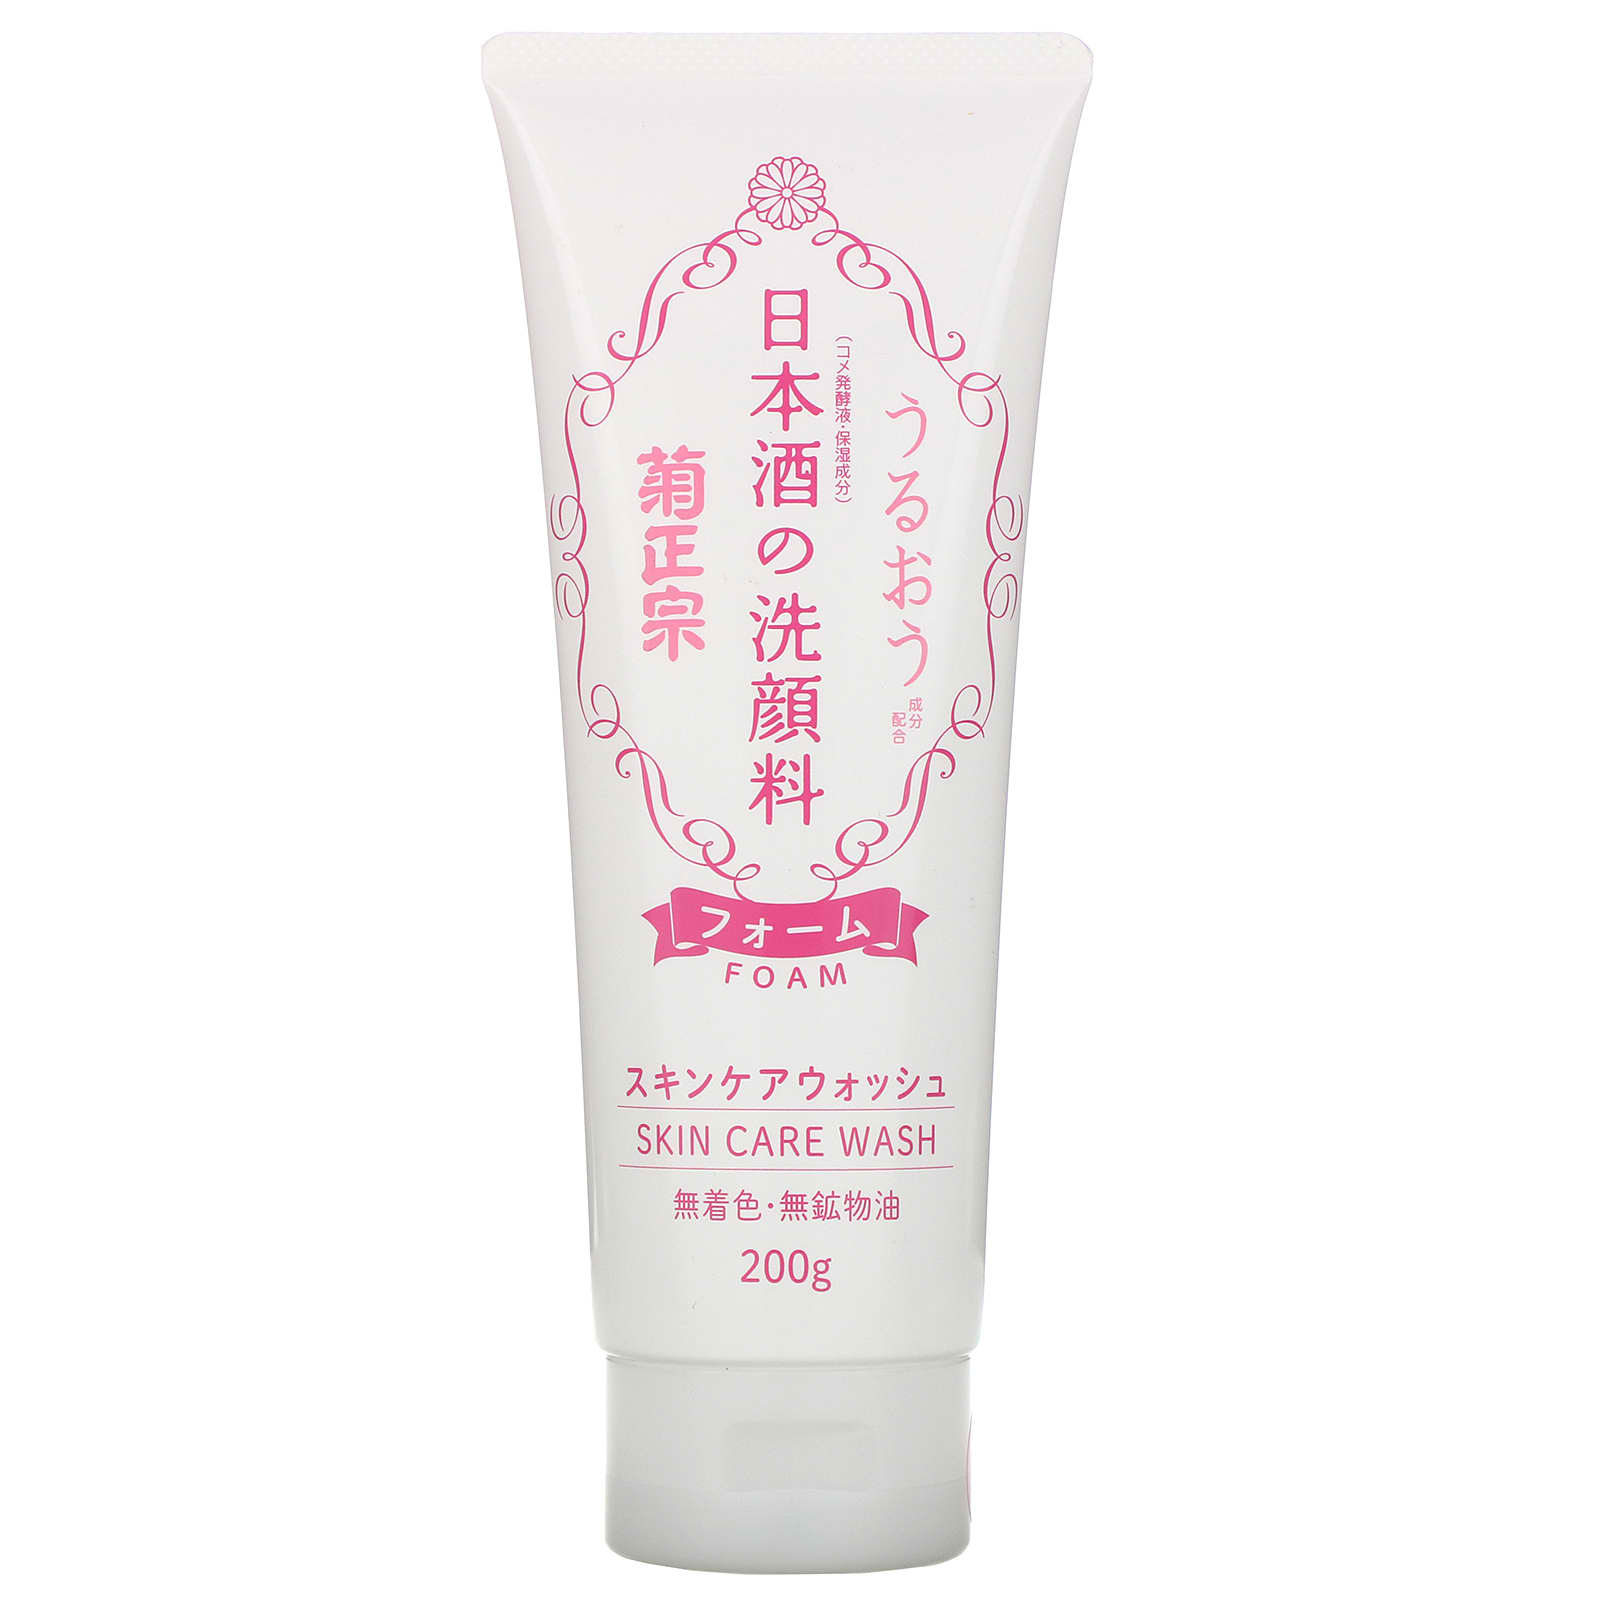 Kikumasamune, Sake Skin Care Wash Foam (200 g)